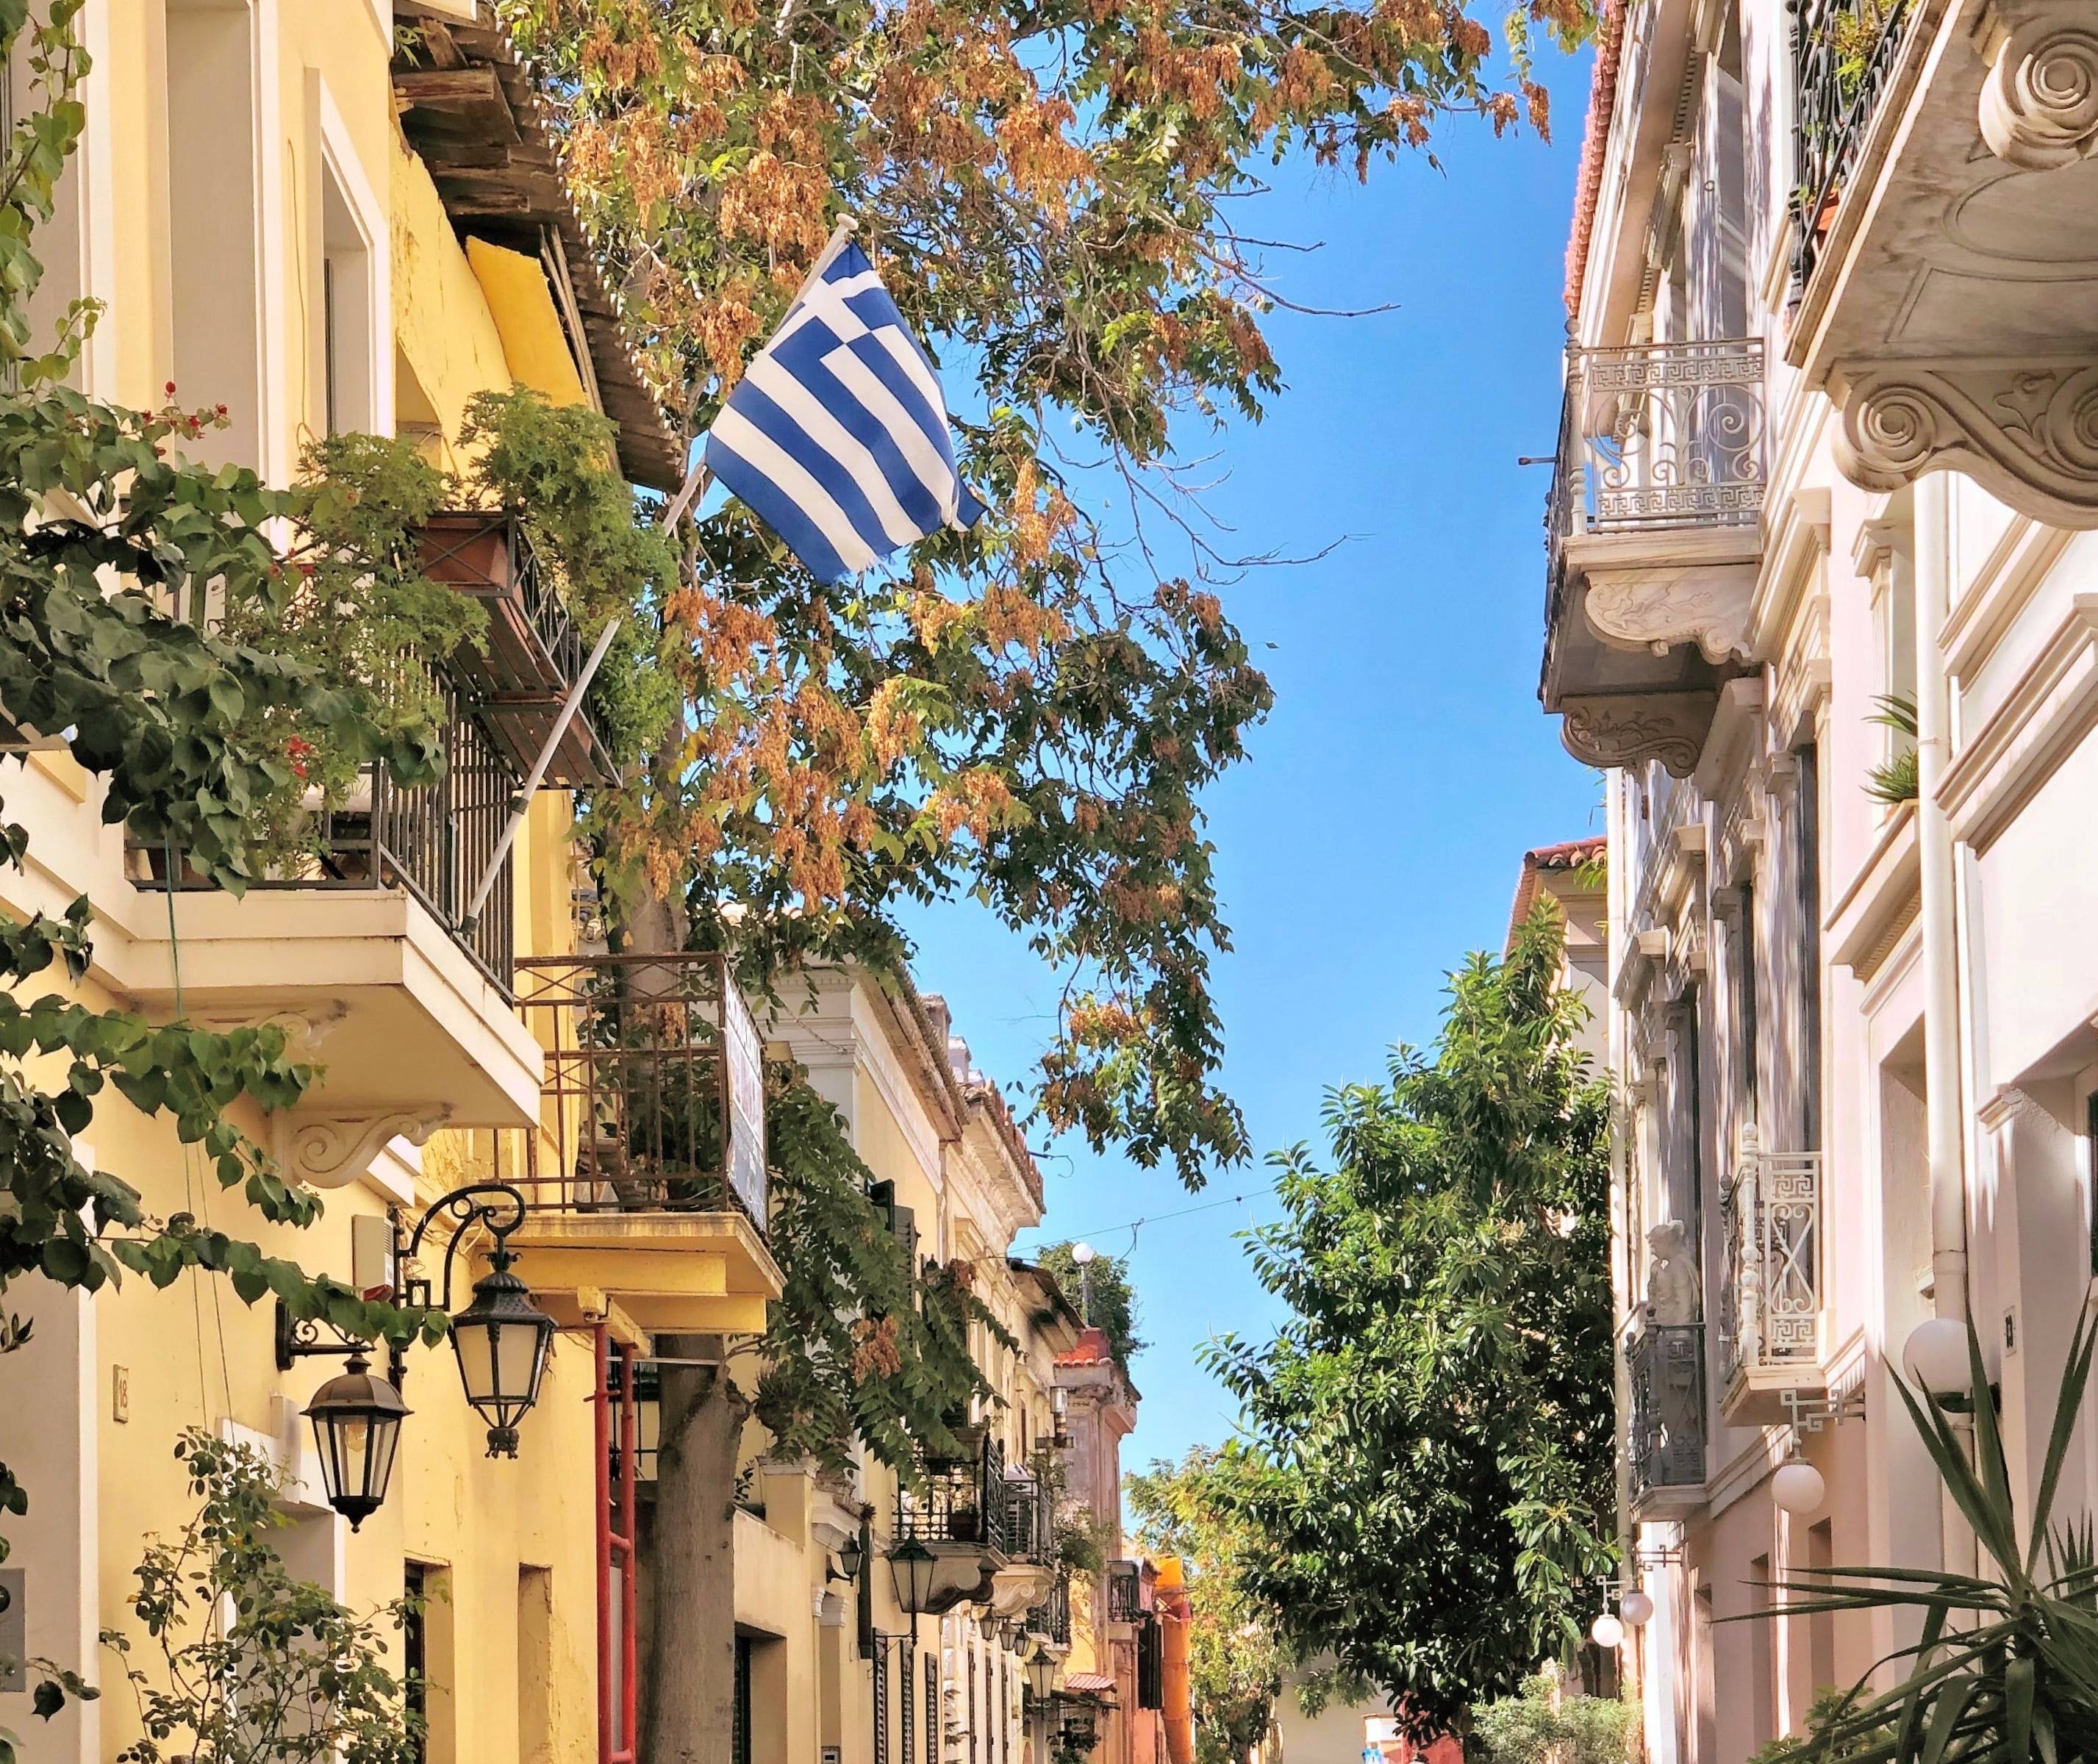 Athen – eine Metropole zwischen Antike und Moderne